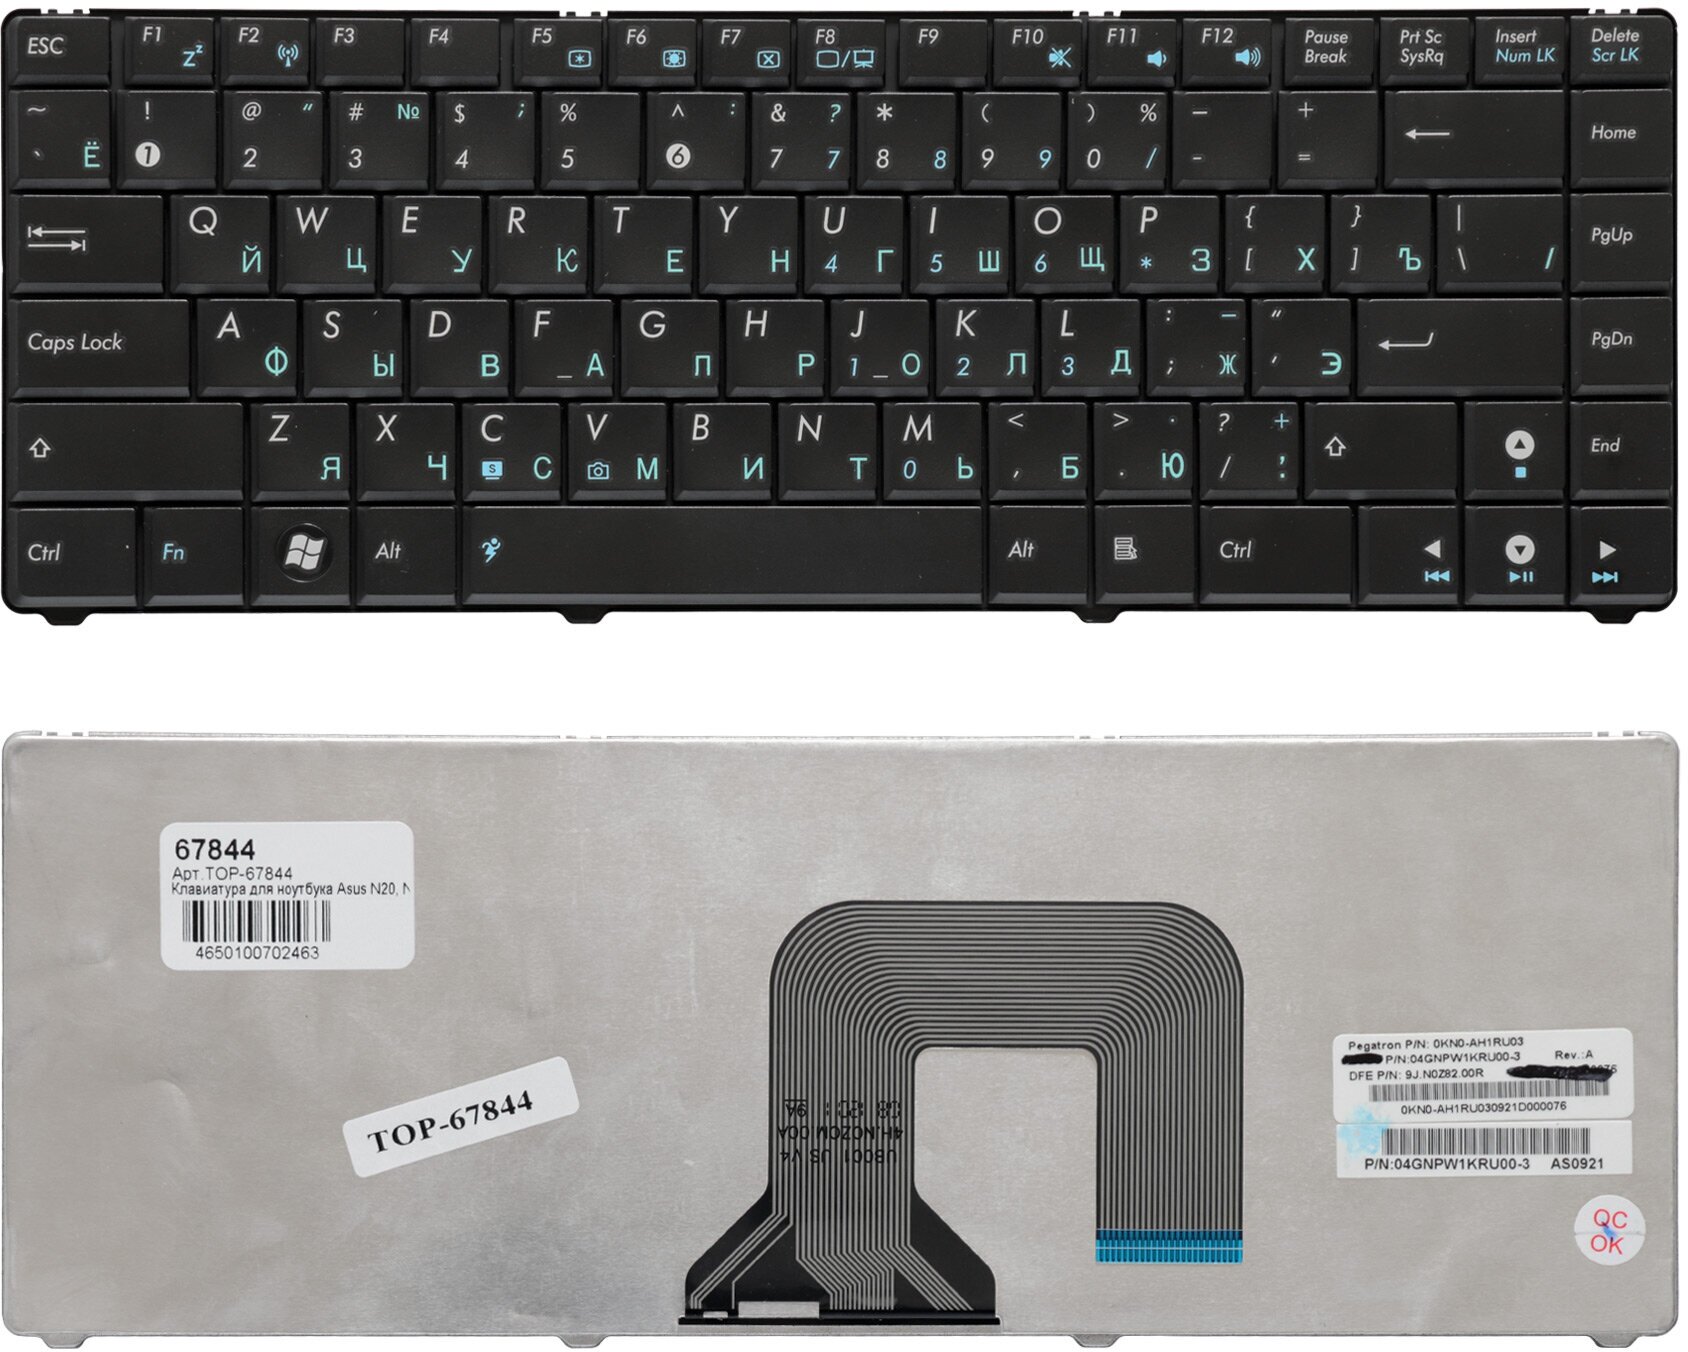 Клавиатура для ноутбука Asus N20, N20A, N20H Series. Плоский Enter. Черная, без рамки. PN: NSK-UB00R.